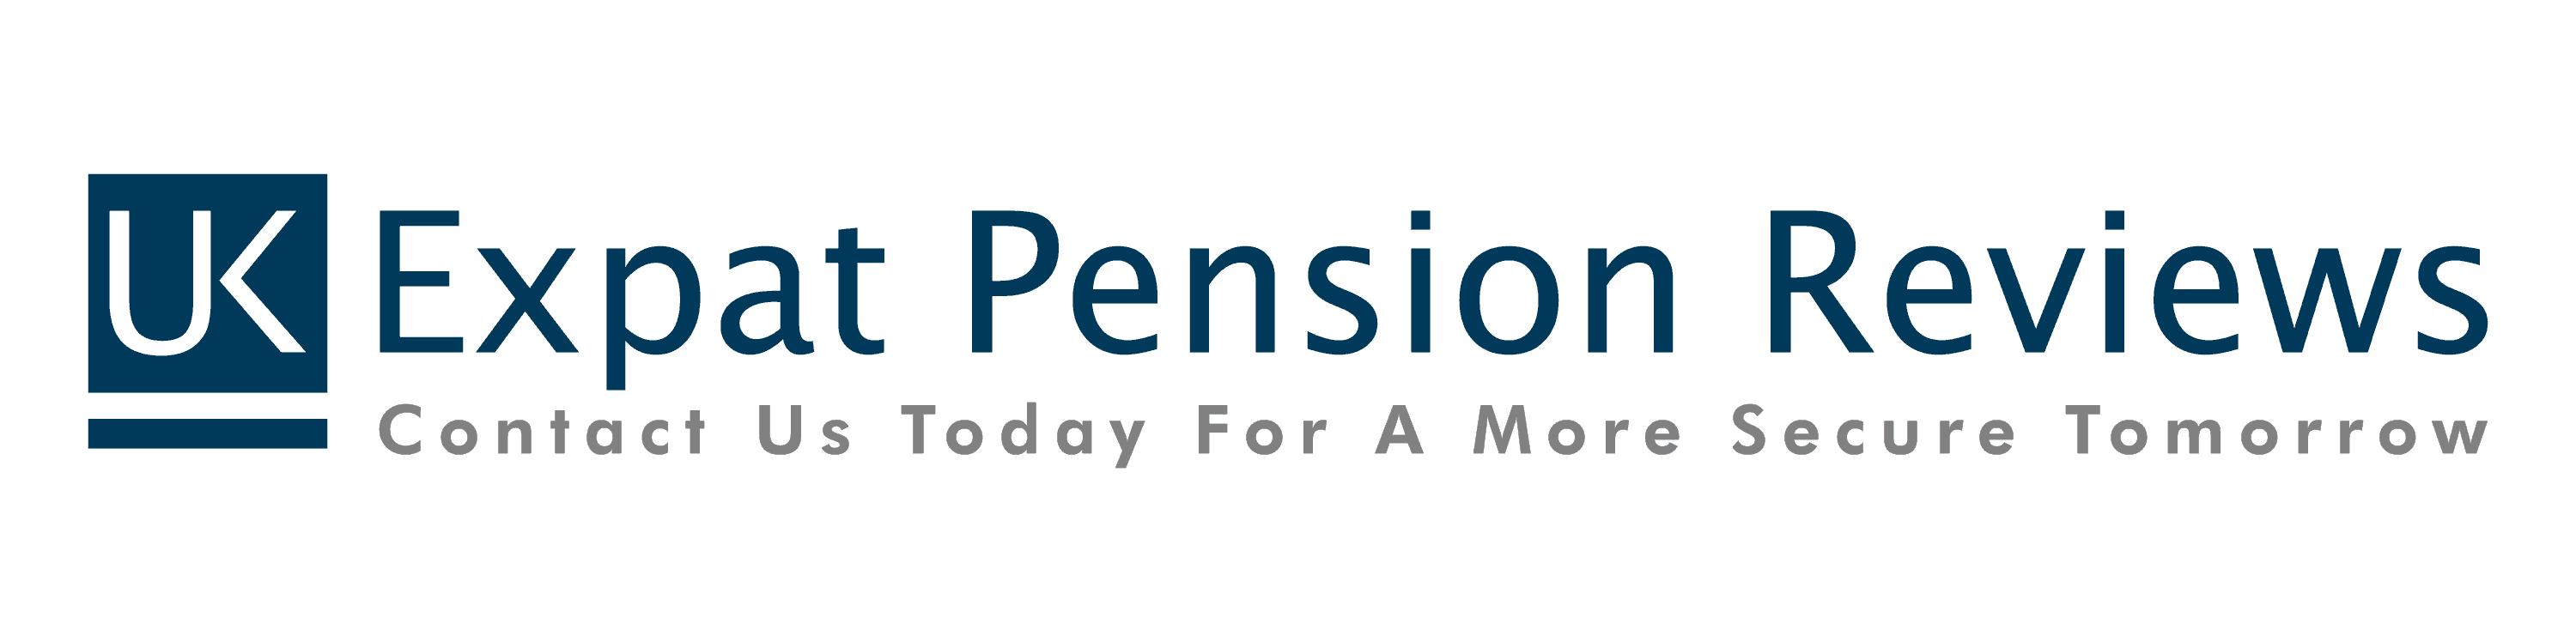 UK Expat Pension Reviews